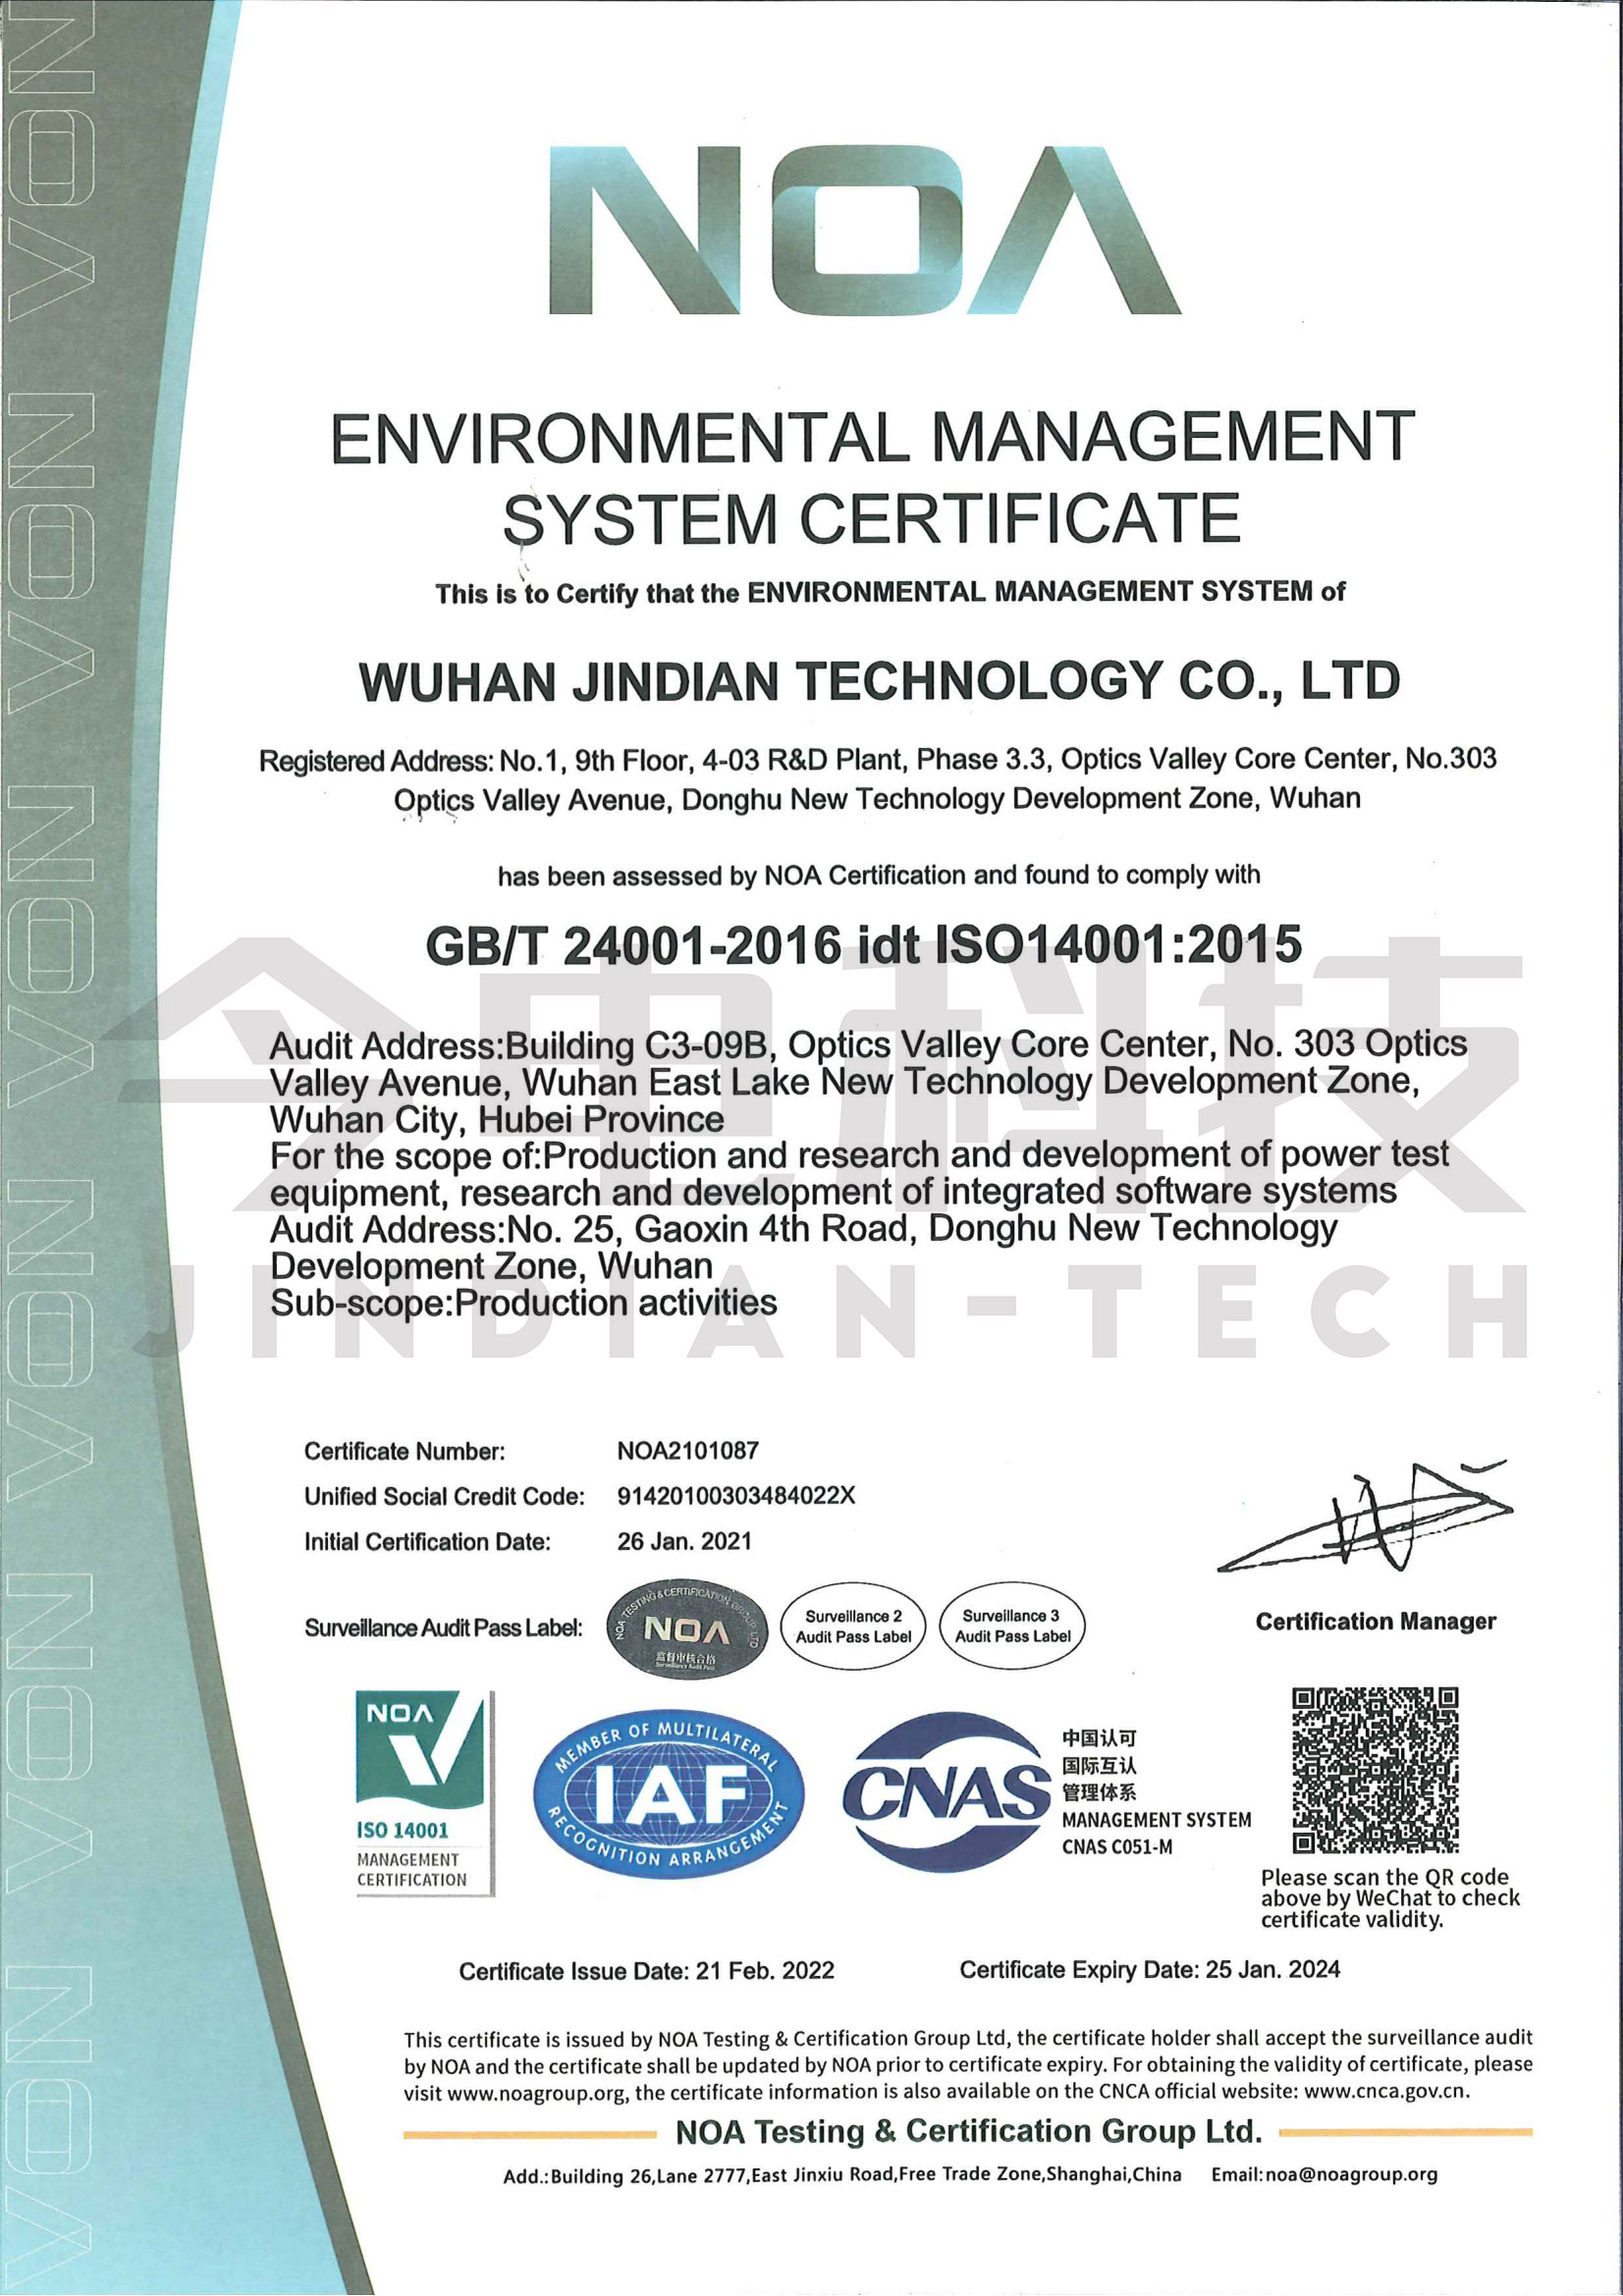  環境管理體系證書(英文版)